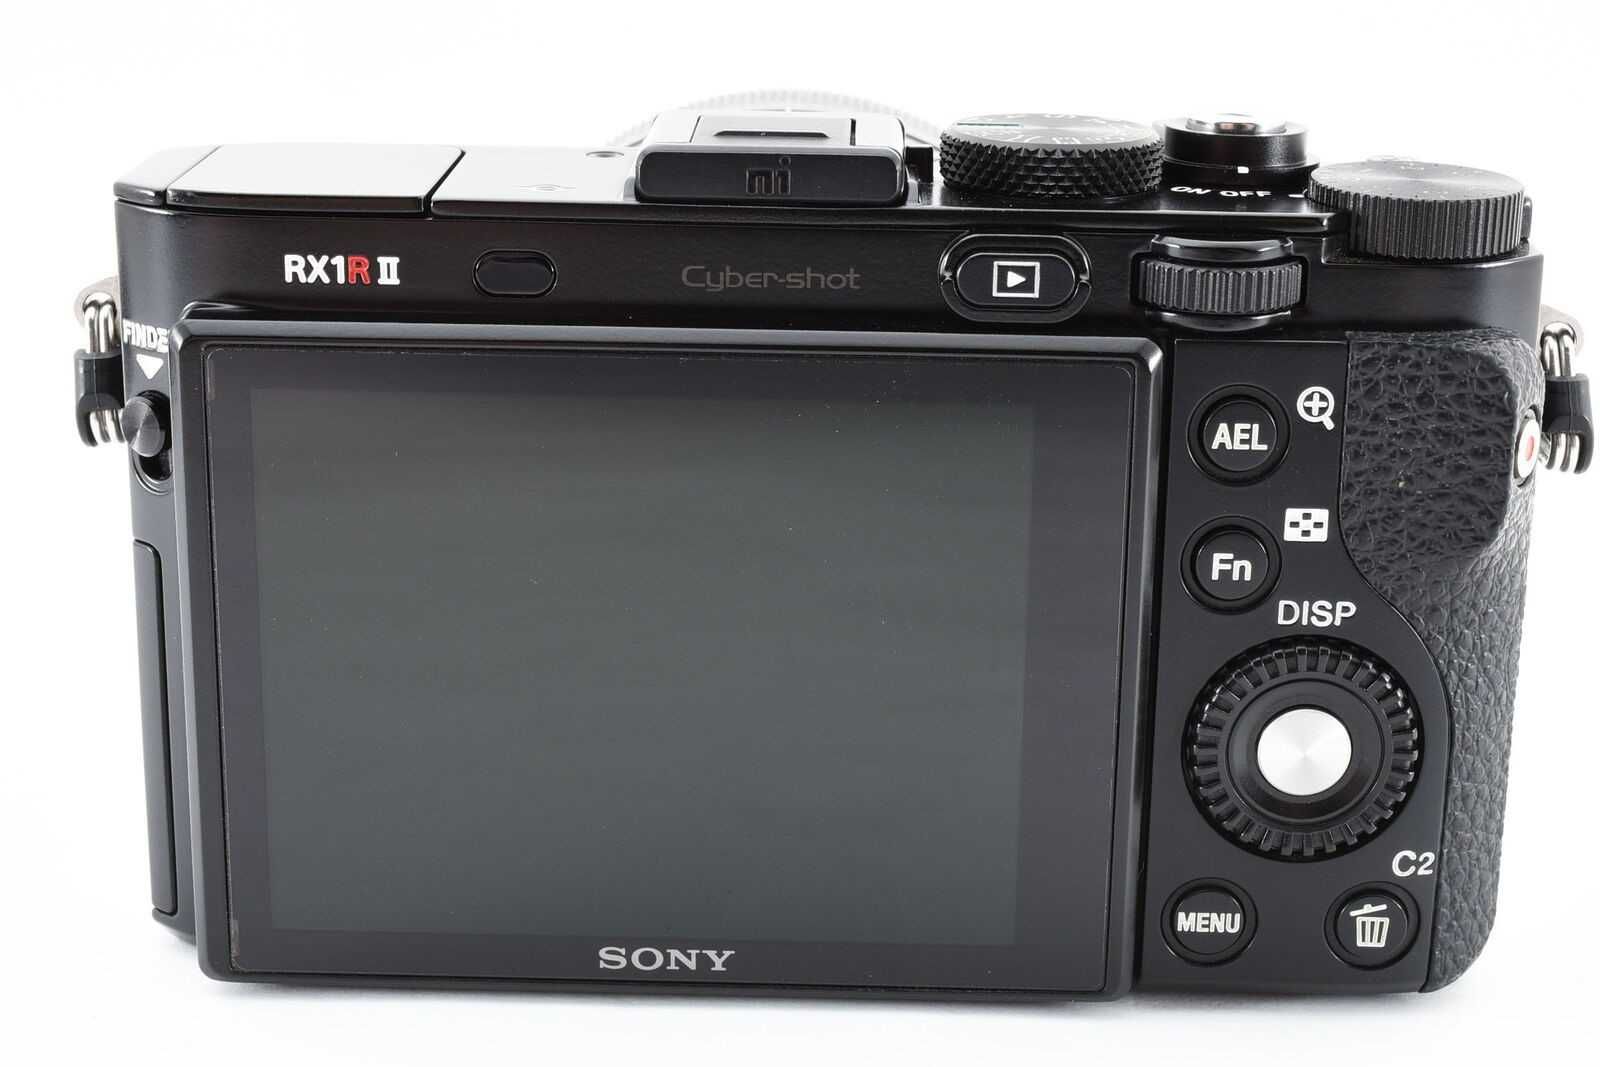 Aparat Sony RX1 RII DSC-RX1RM2 42MP